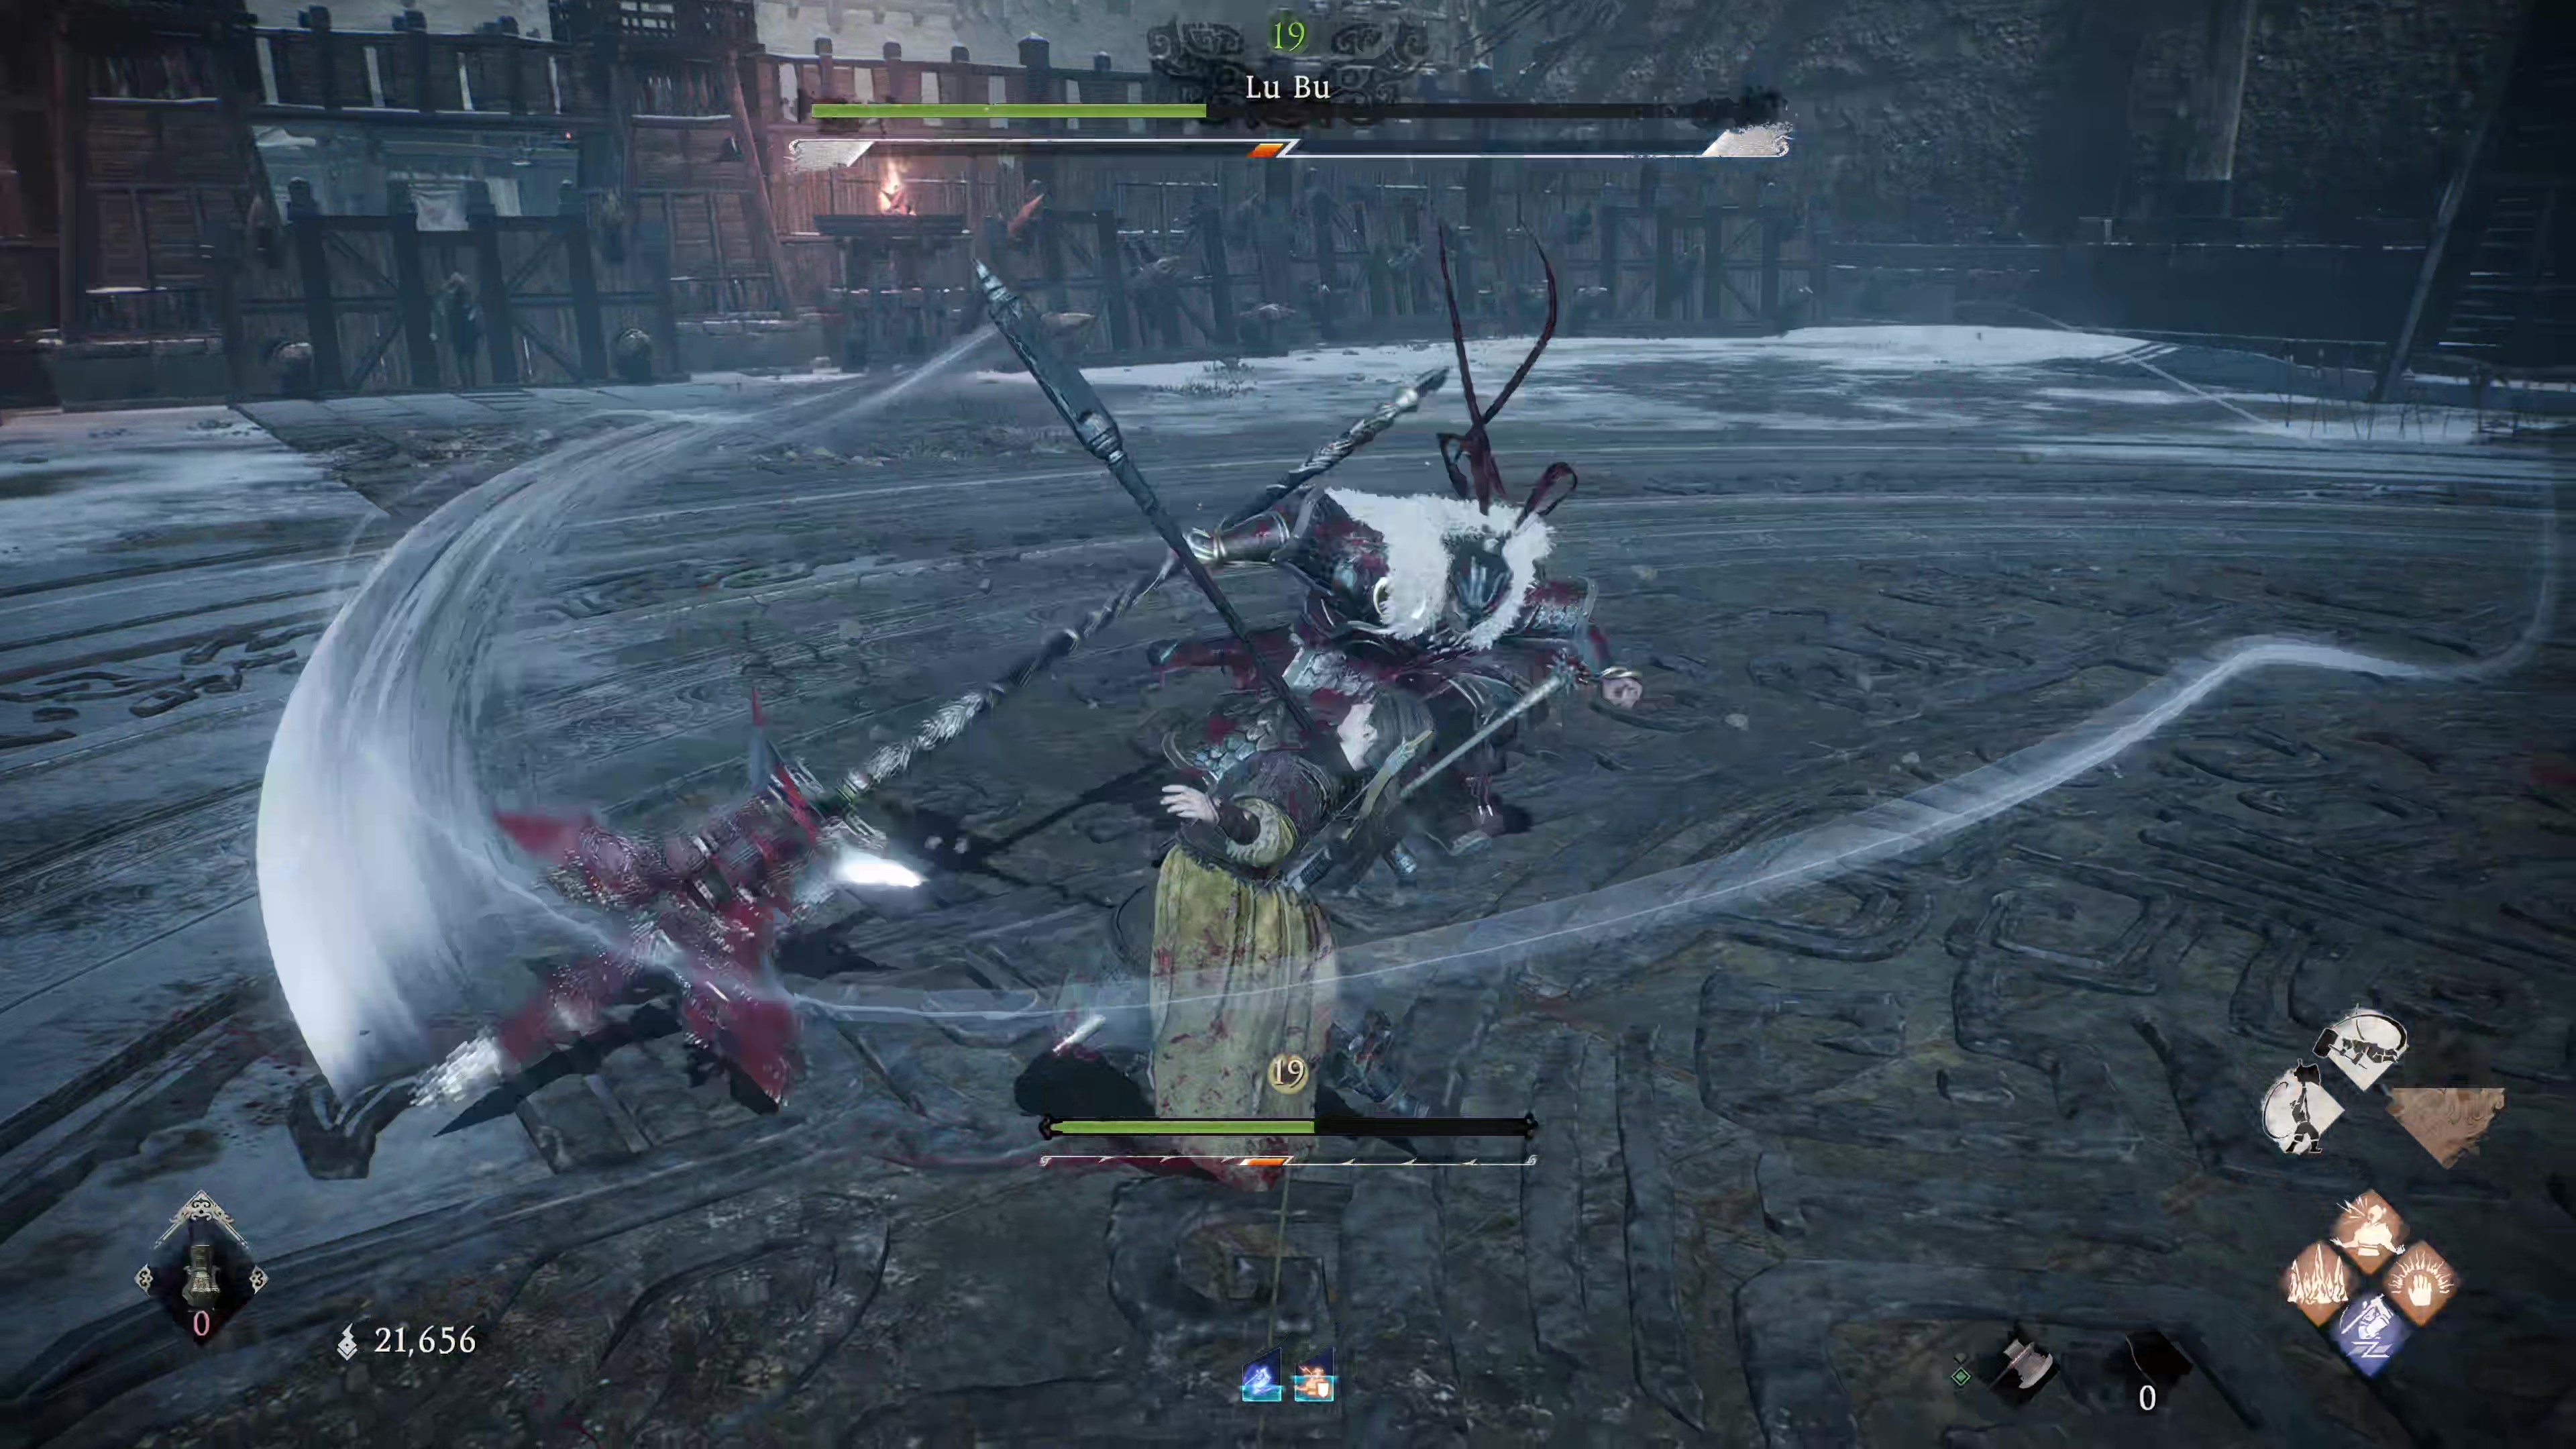 Внутриигровой скриншот Wo Long: Fallen Dynasty, на котором Лу Бу ранит игрока.